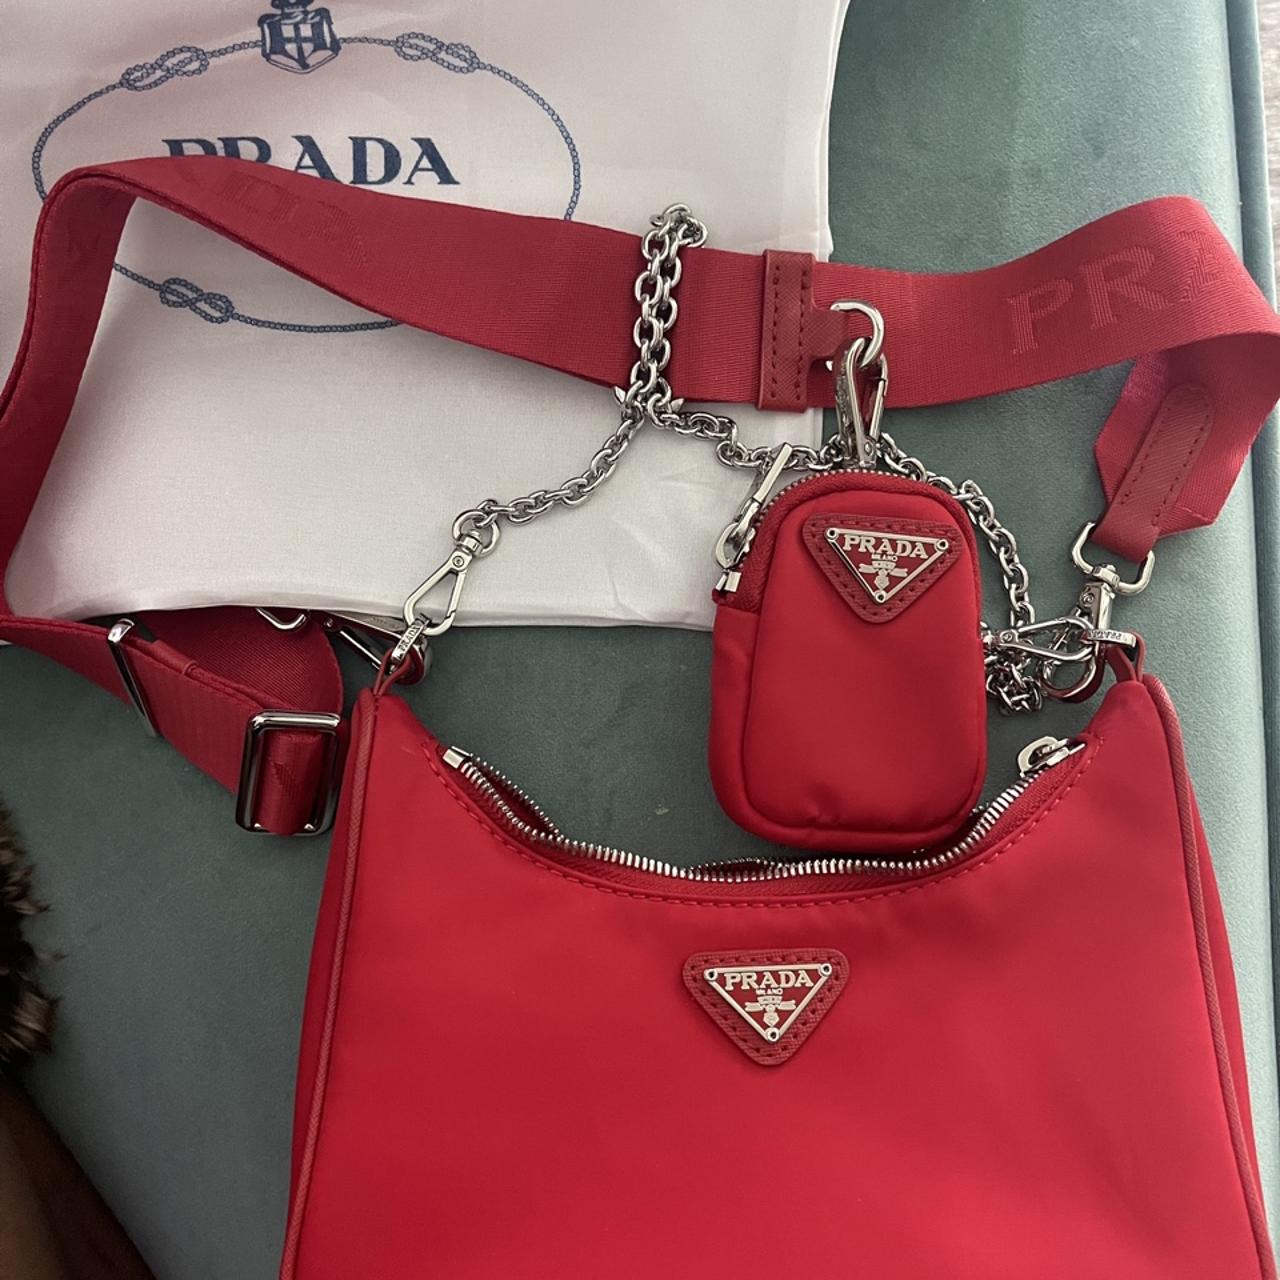 Replica Prada Cahier Astrology bag! This bag is sooo - Depop